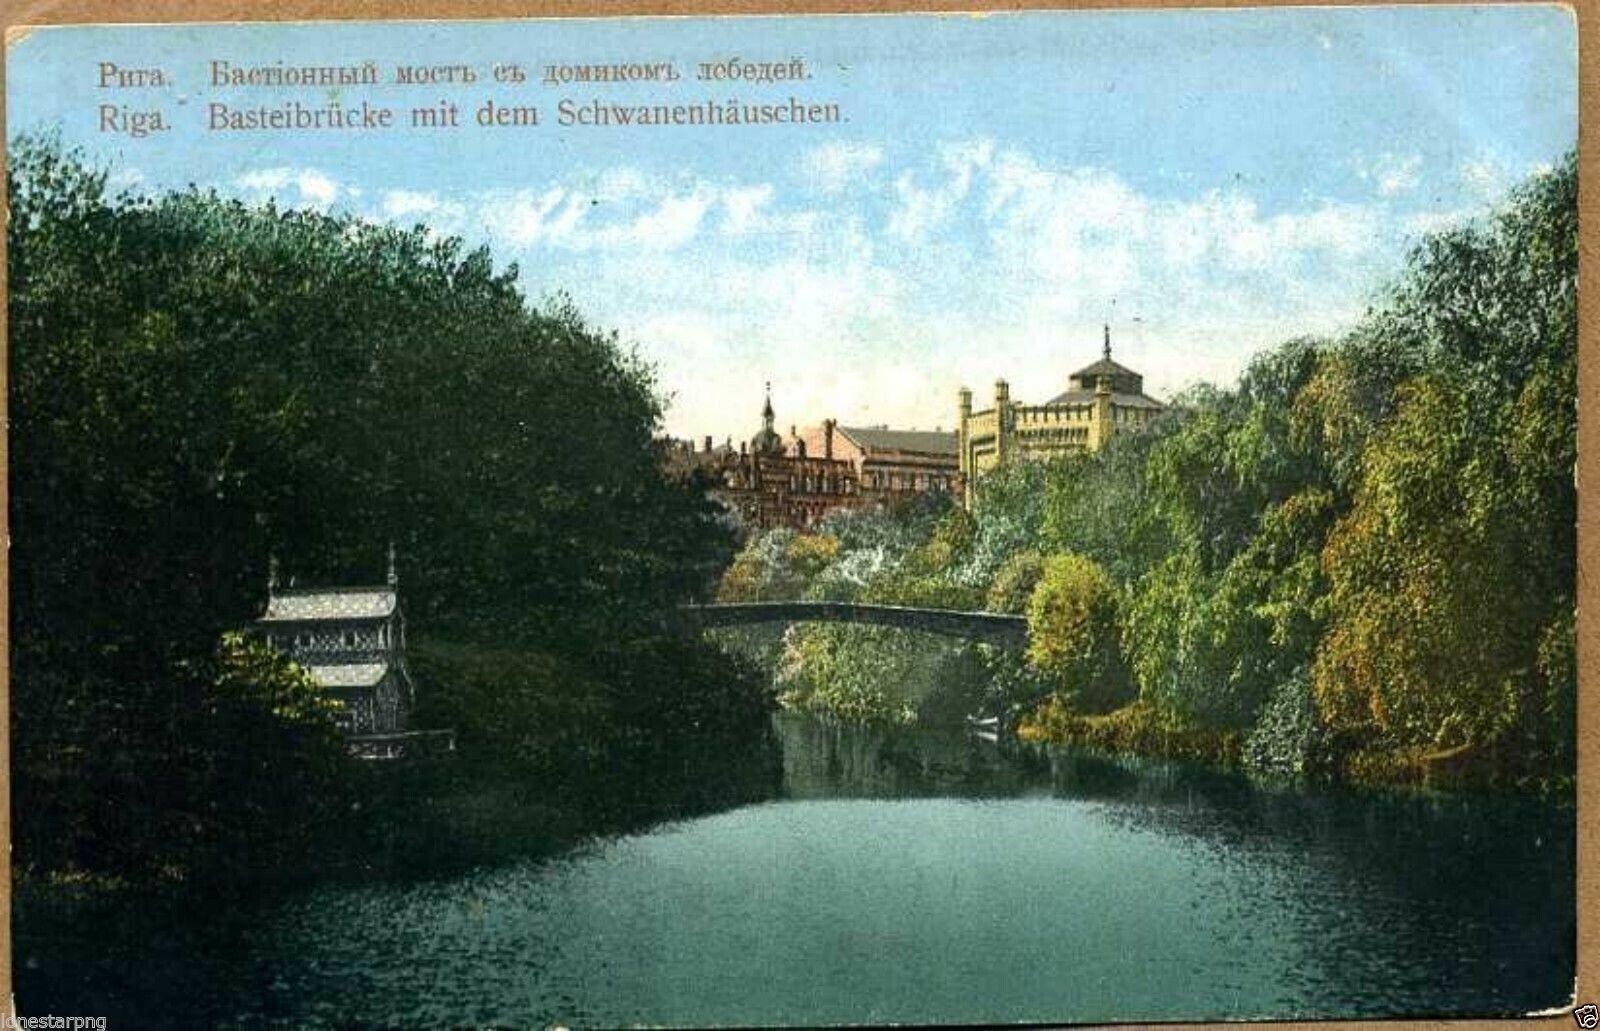 Latvia 1910's Riga Basteibrucke mit dem Schwanenhauschen Postcard